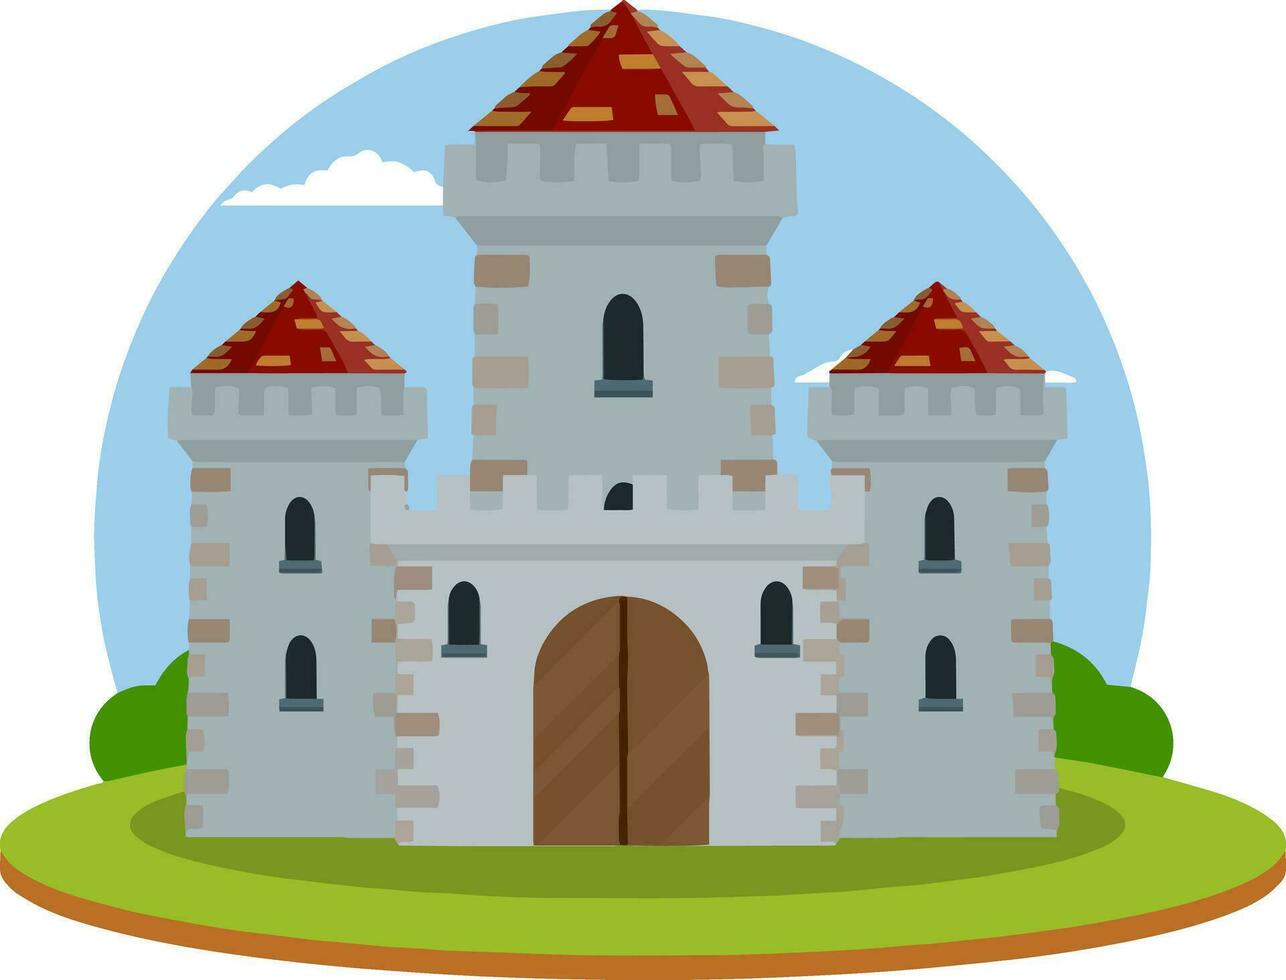 militär byggnad av riddare och kung. försvar och pålitlighet. torn, vägg och Port. tecknad serie platt illustration. grön landskap vektor